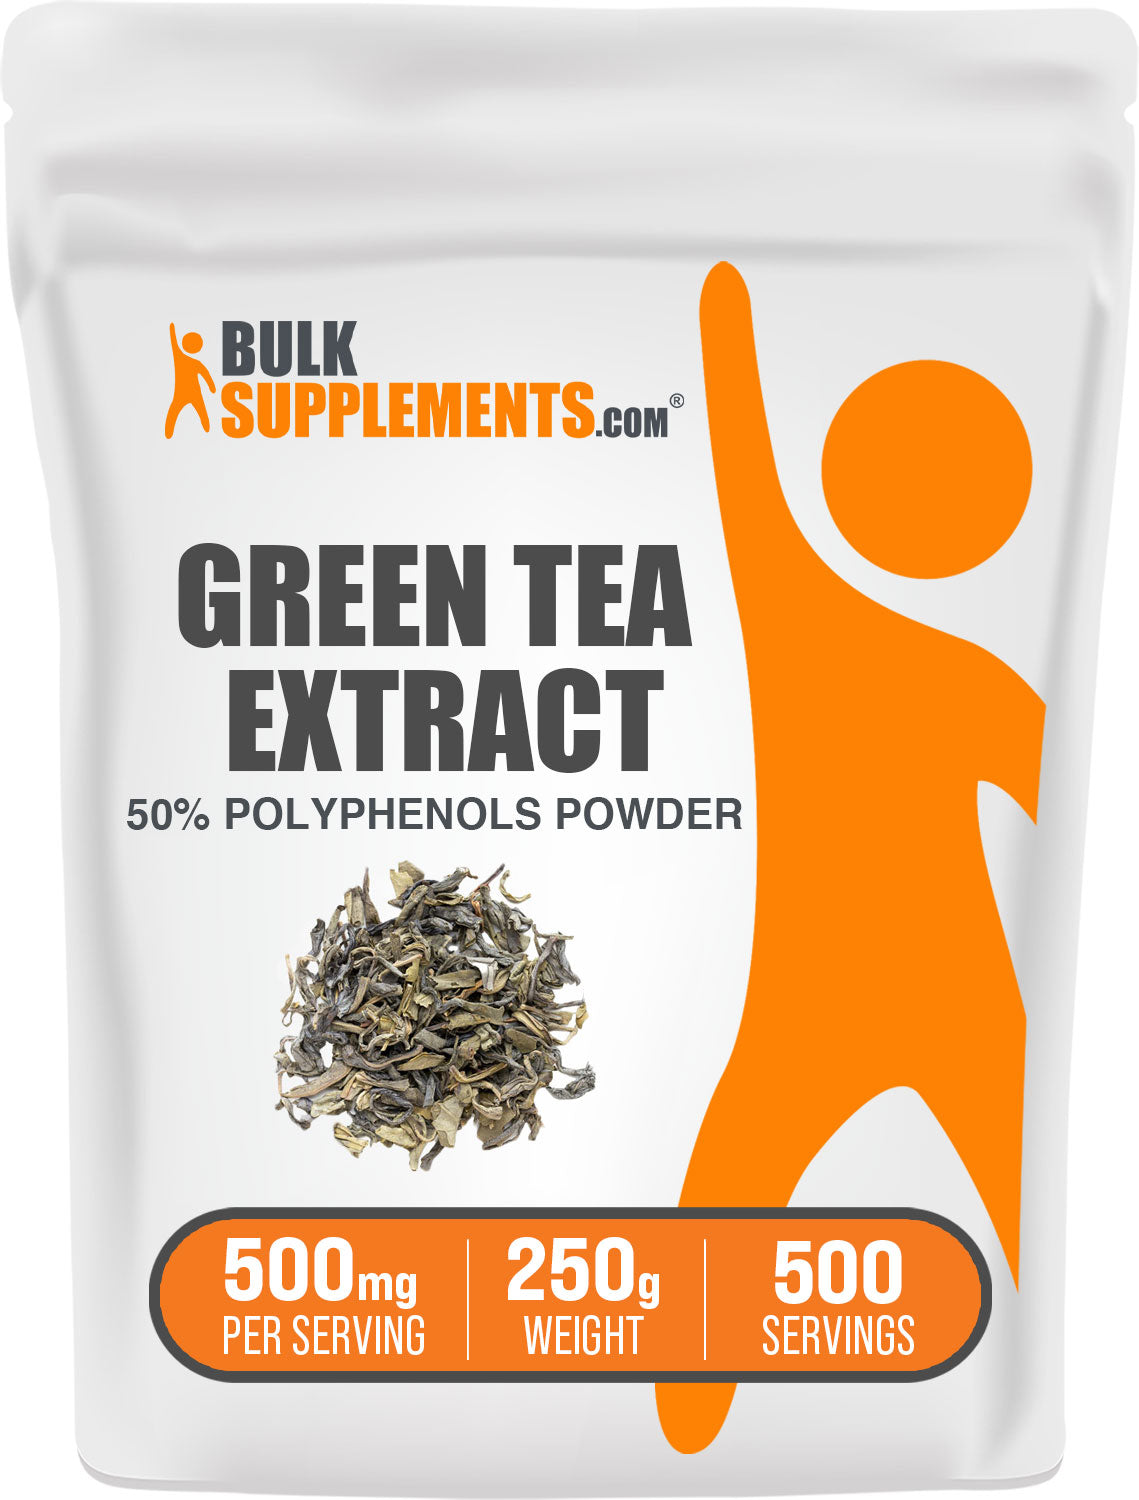 Extrait de thé vert pur à 50% de polyphénols